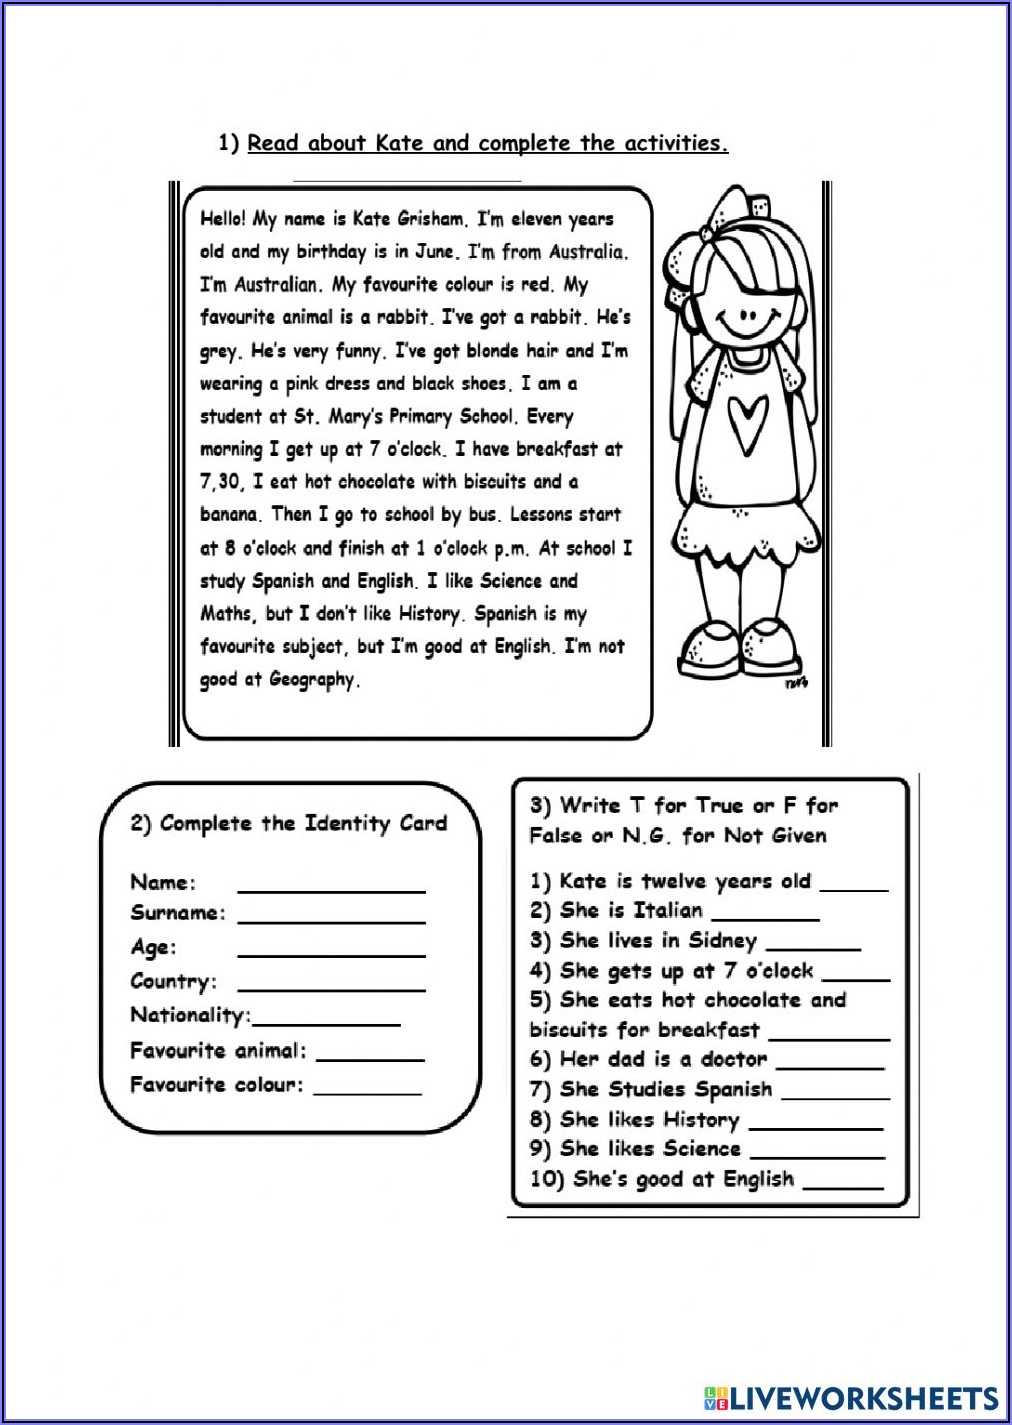 Reading Comprehension Worksheets Word Document Worksheet Resume 